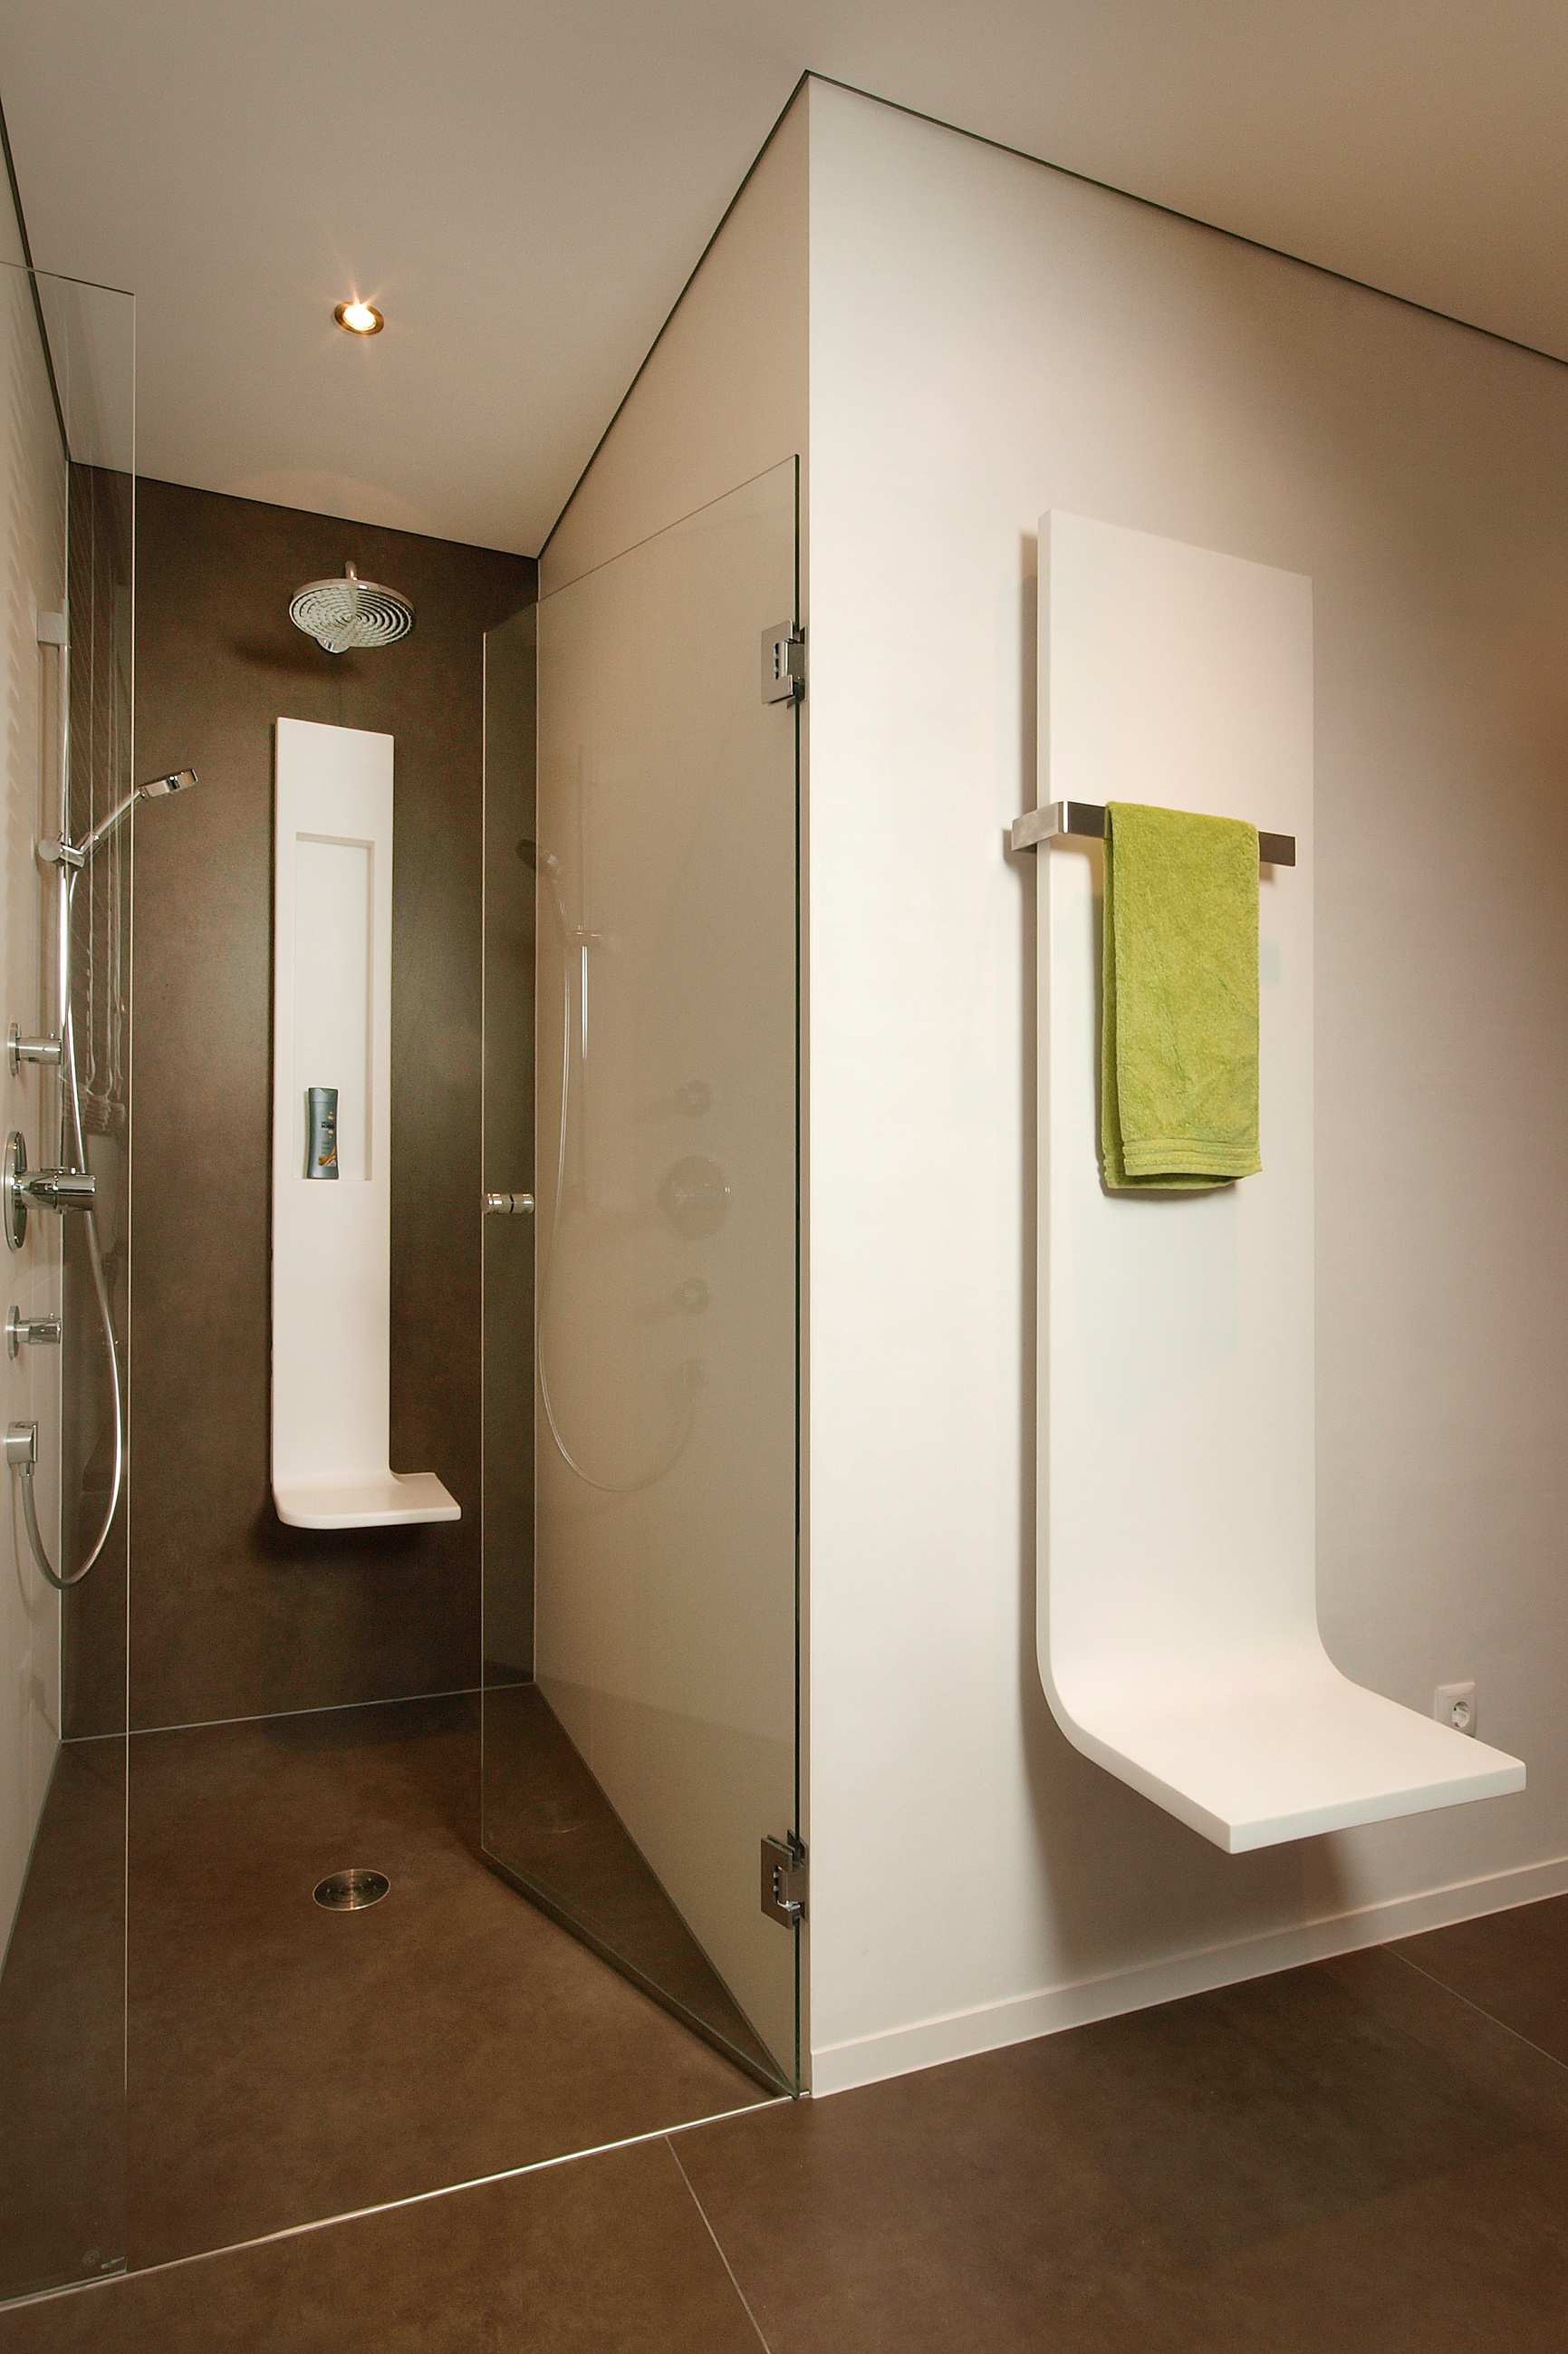 Duschtassenelement Neue Gestaltungsmöglichkeiten mit Ceraflex Produkten in Ihren Sanitärraumen. Unterschiedliche Produkte mit gleicher Oberflächenfarbe setzen neue Maßstäbe in der Architektur.